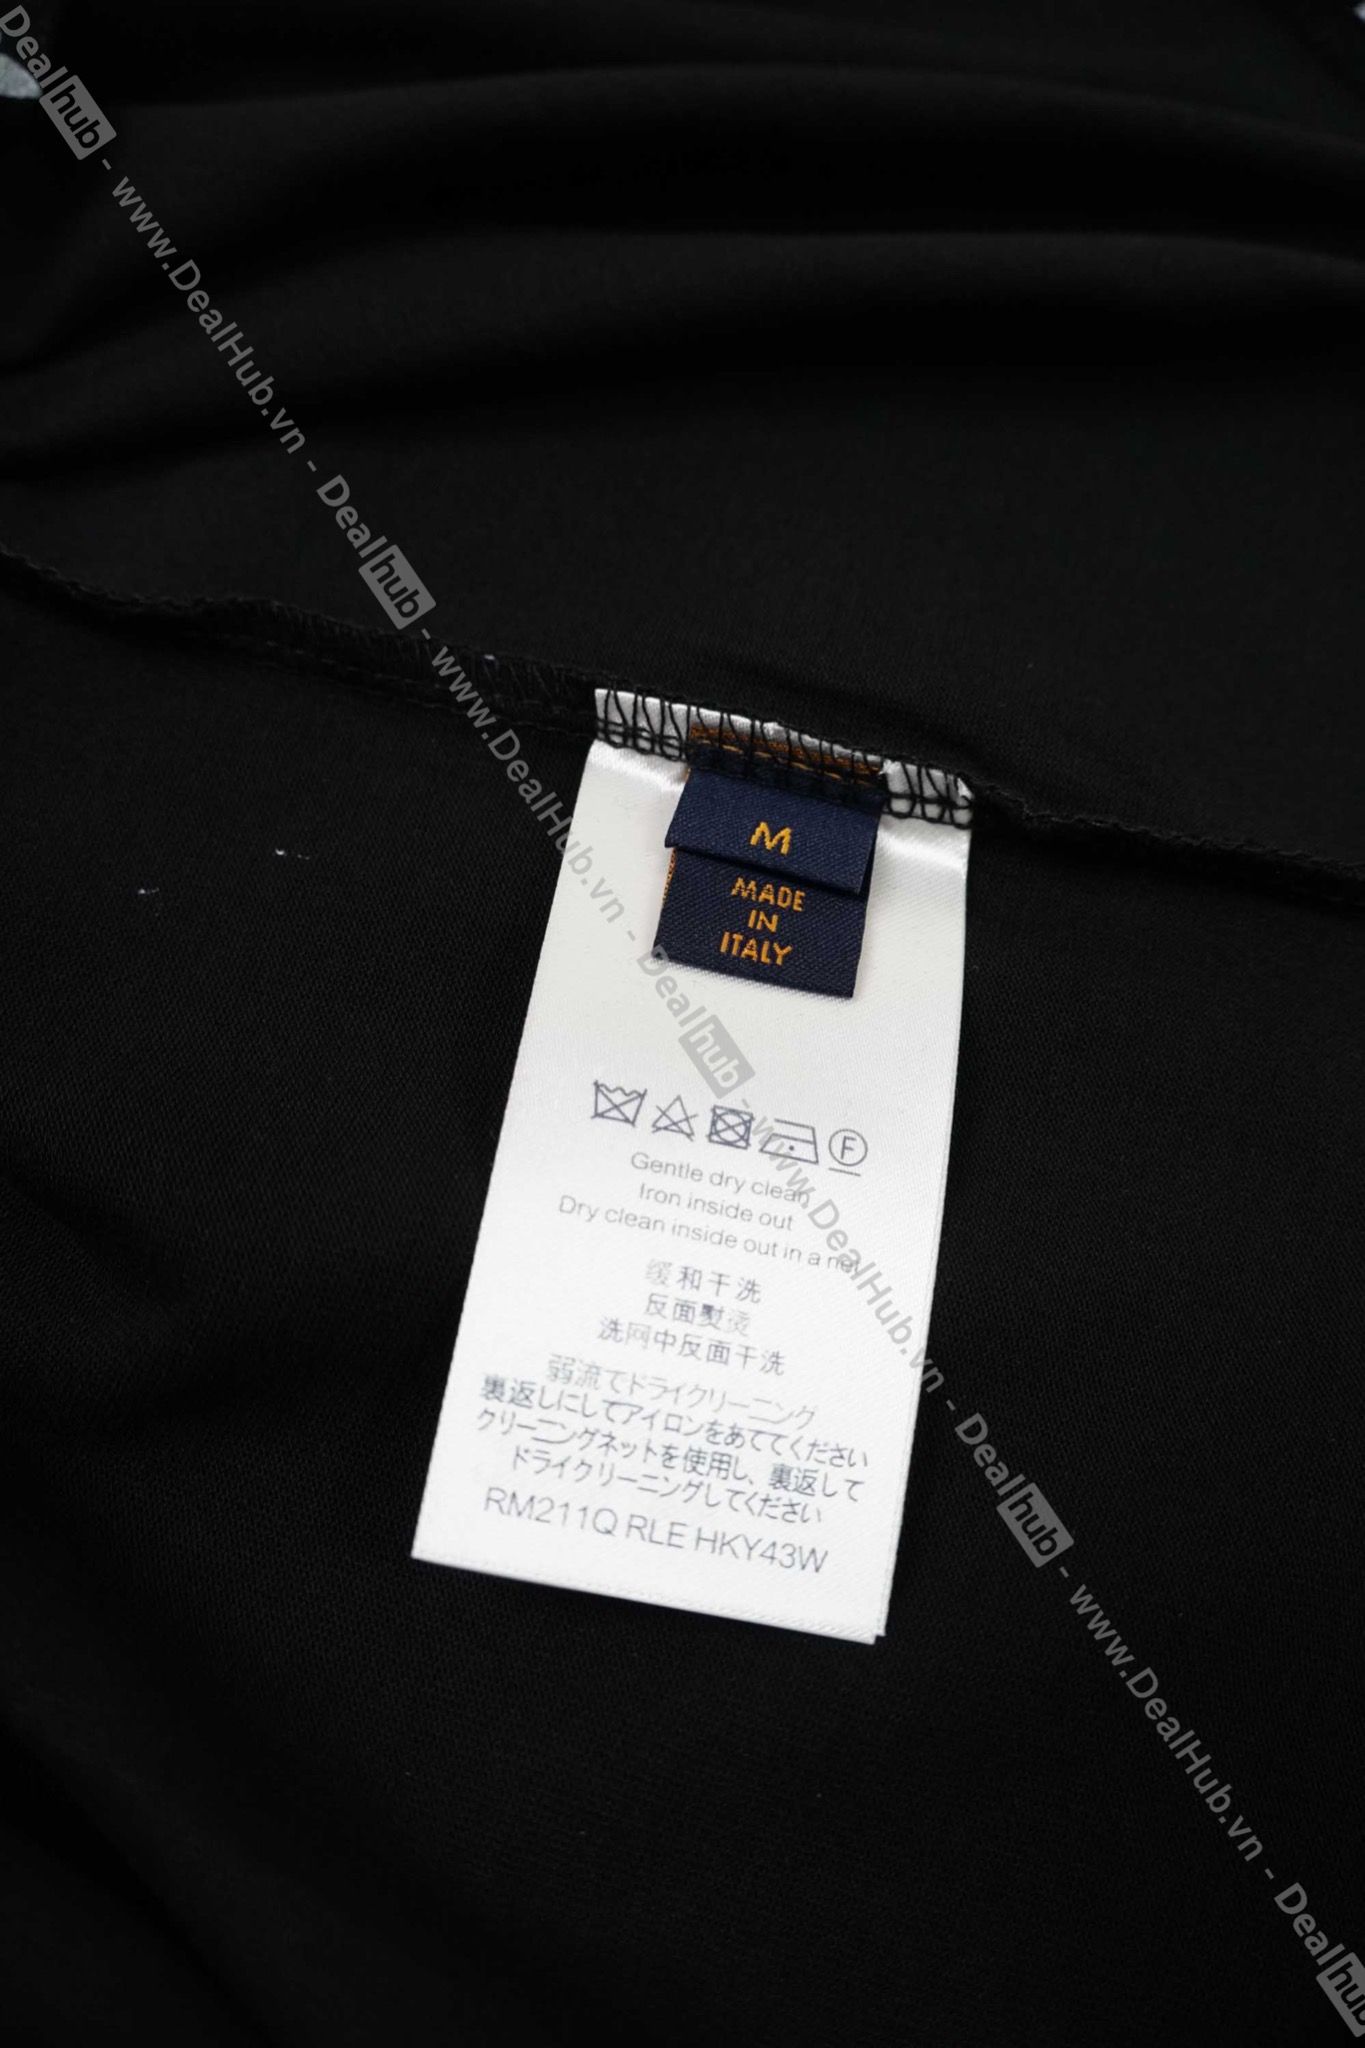 Louis Vuitton Monogram Gradient T-Shirt Black LV001